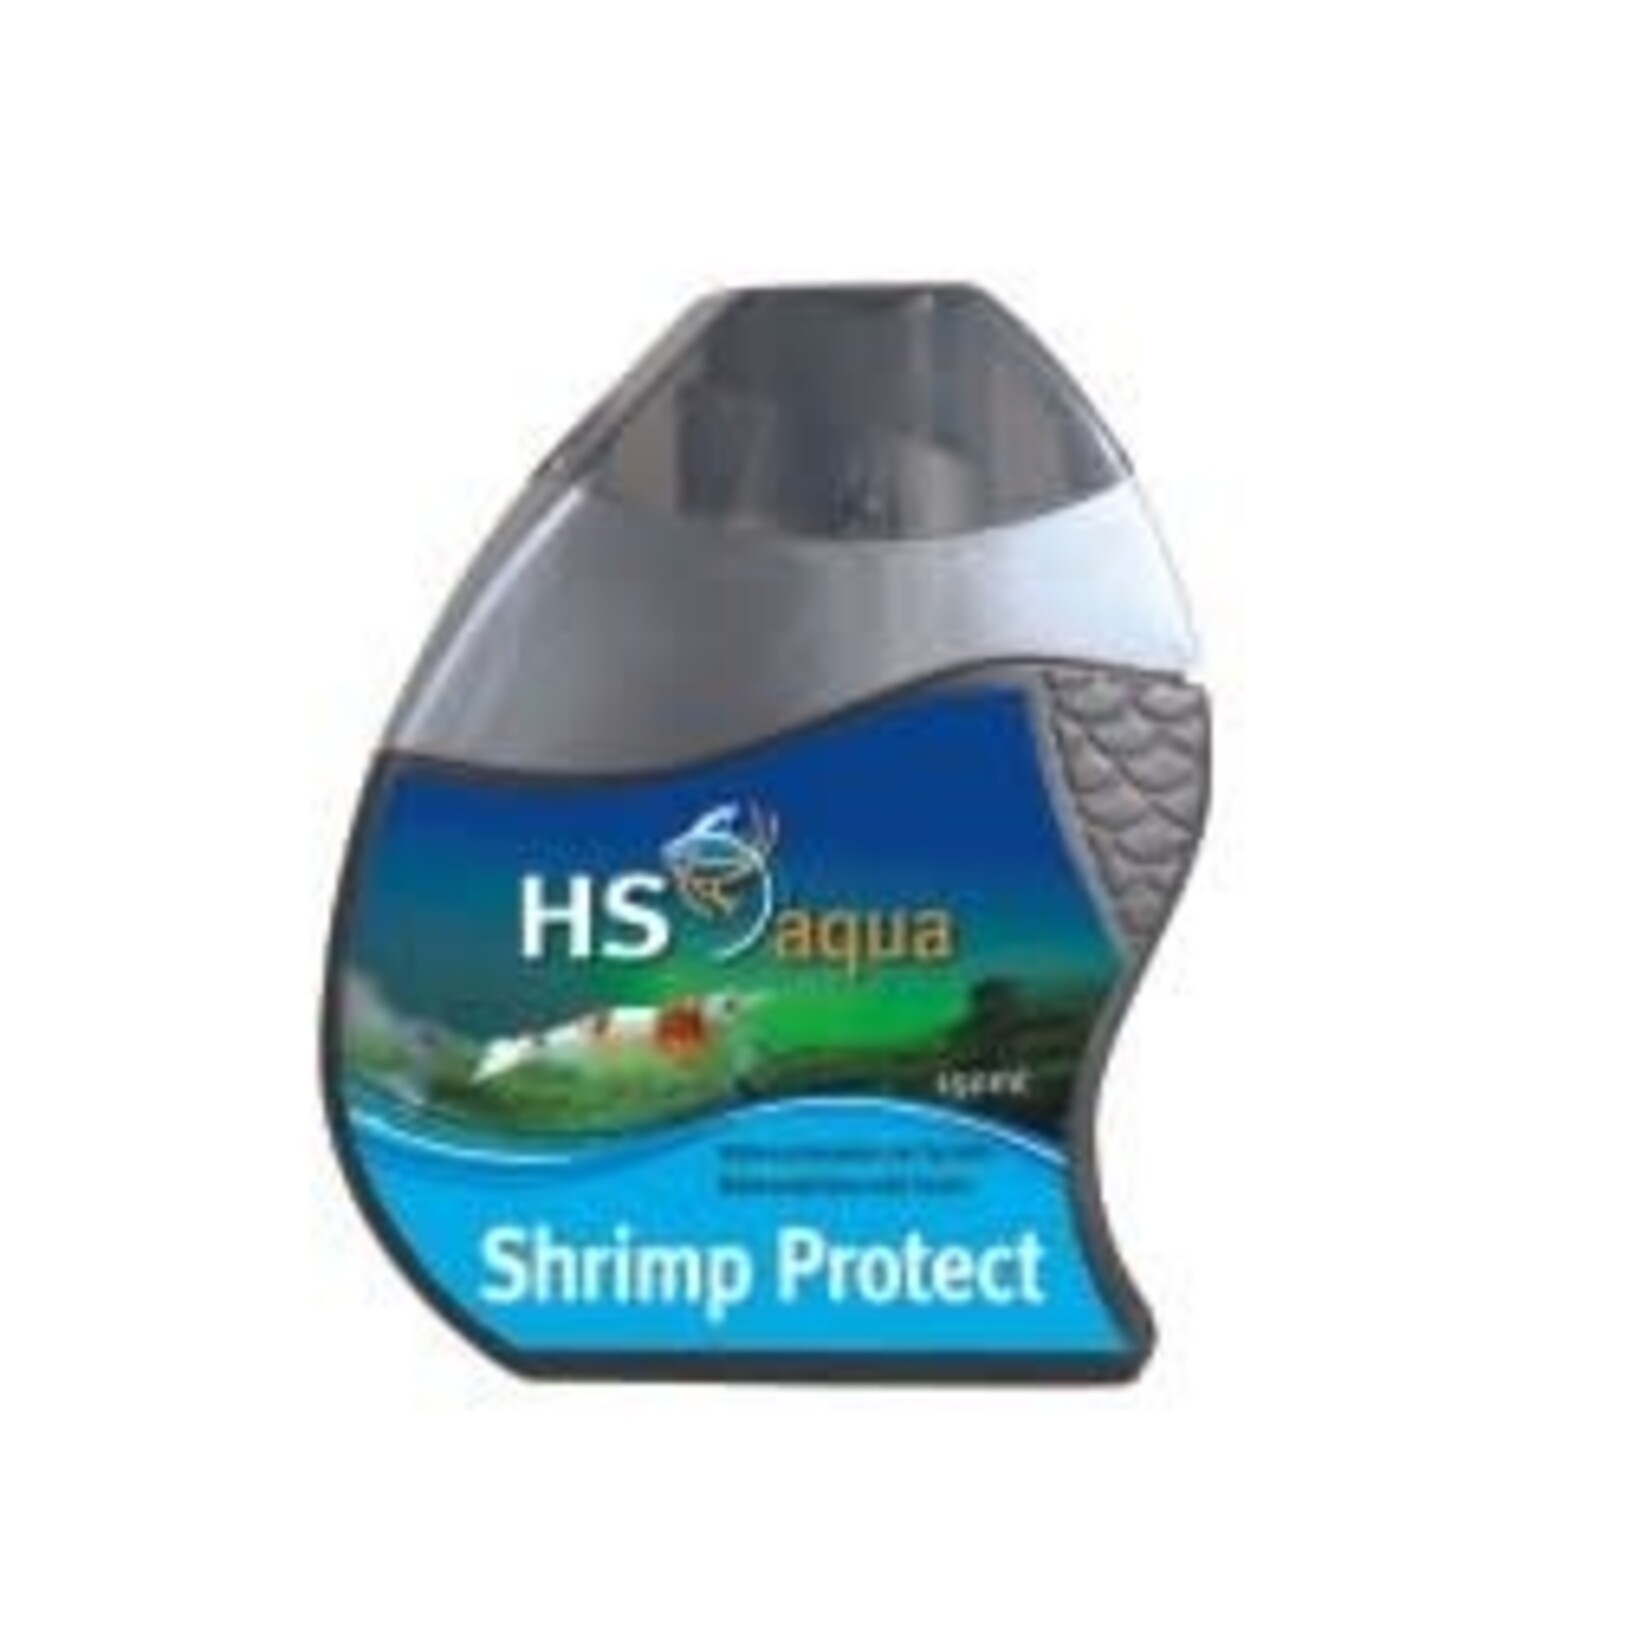 HS Aqua Shrimp protect 150 ml